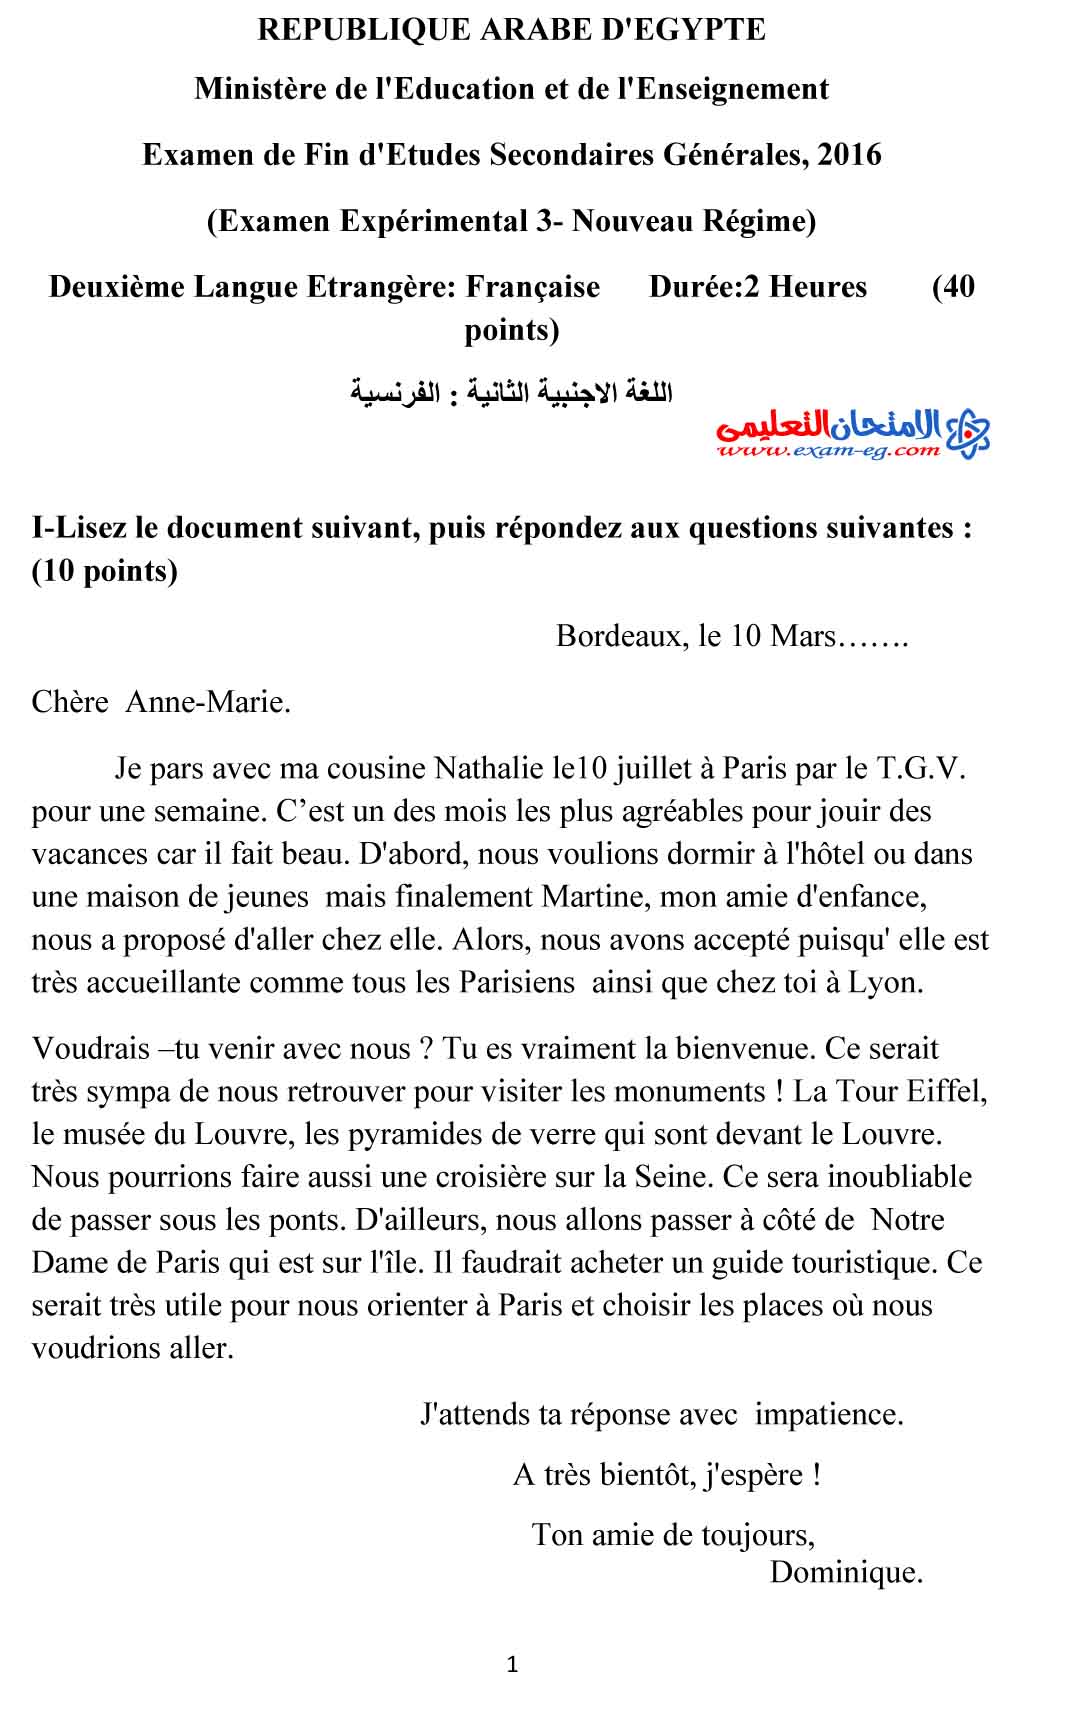 لغة فرنسية 3 - مدرسة اون لاين-1